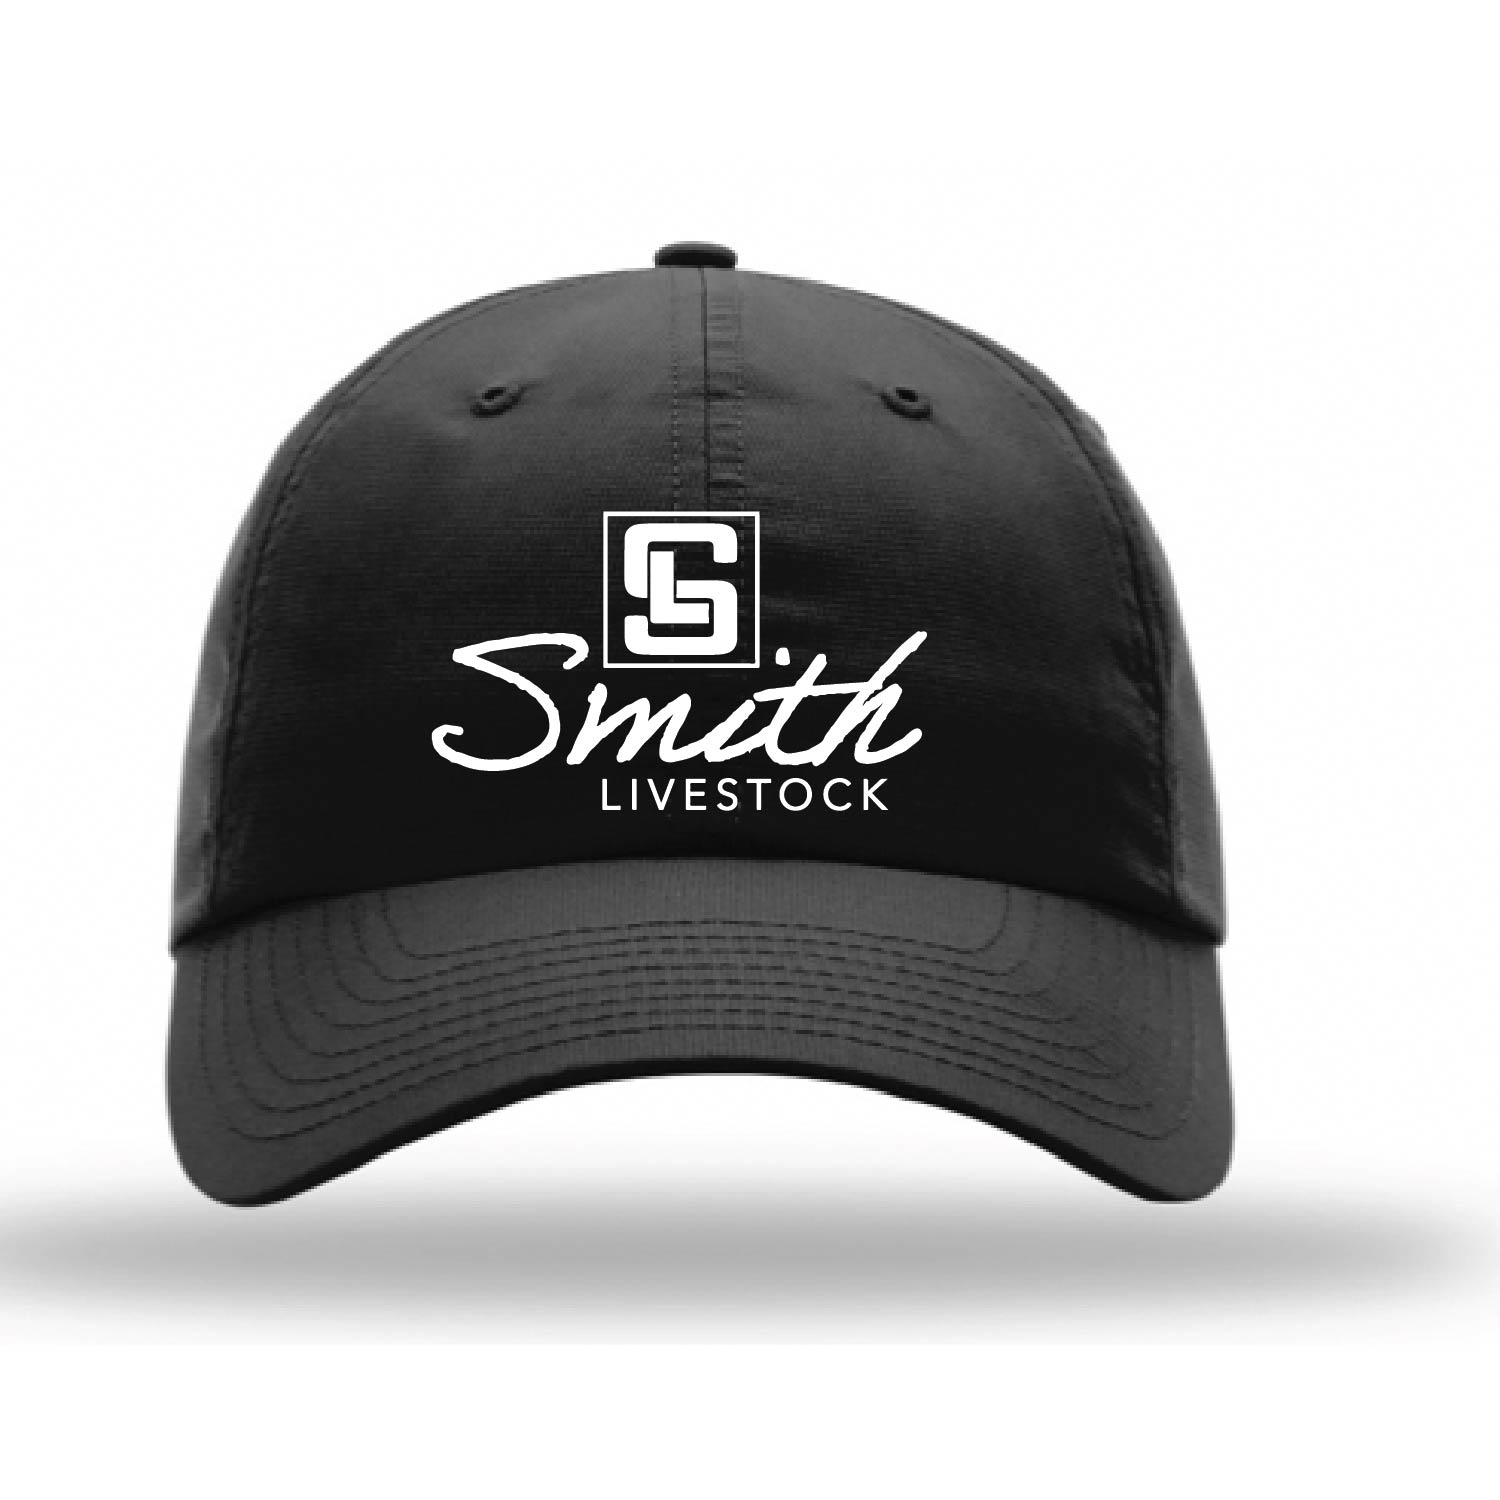 Smith Livestock Hats